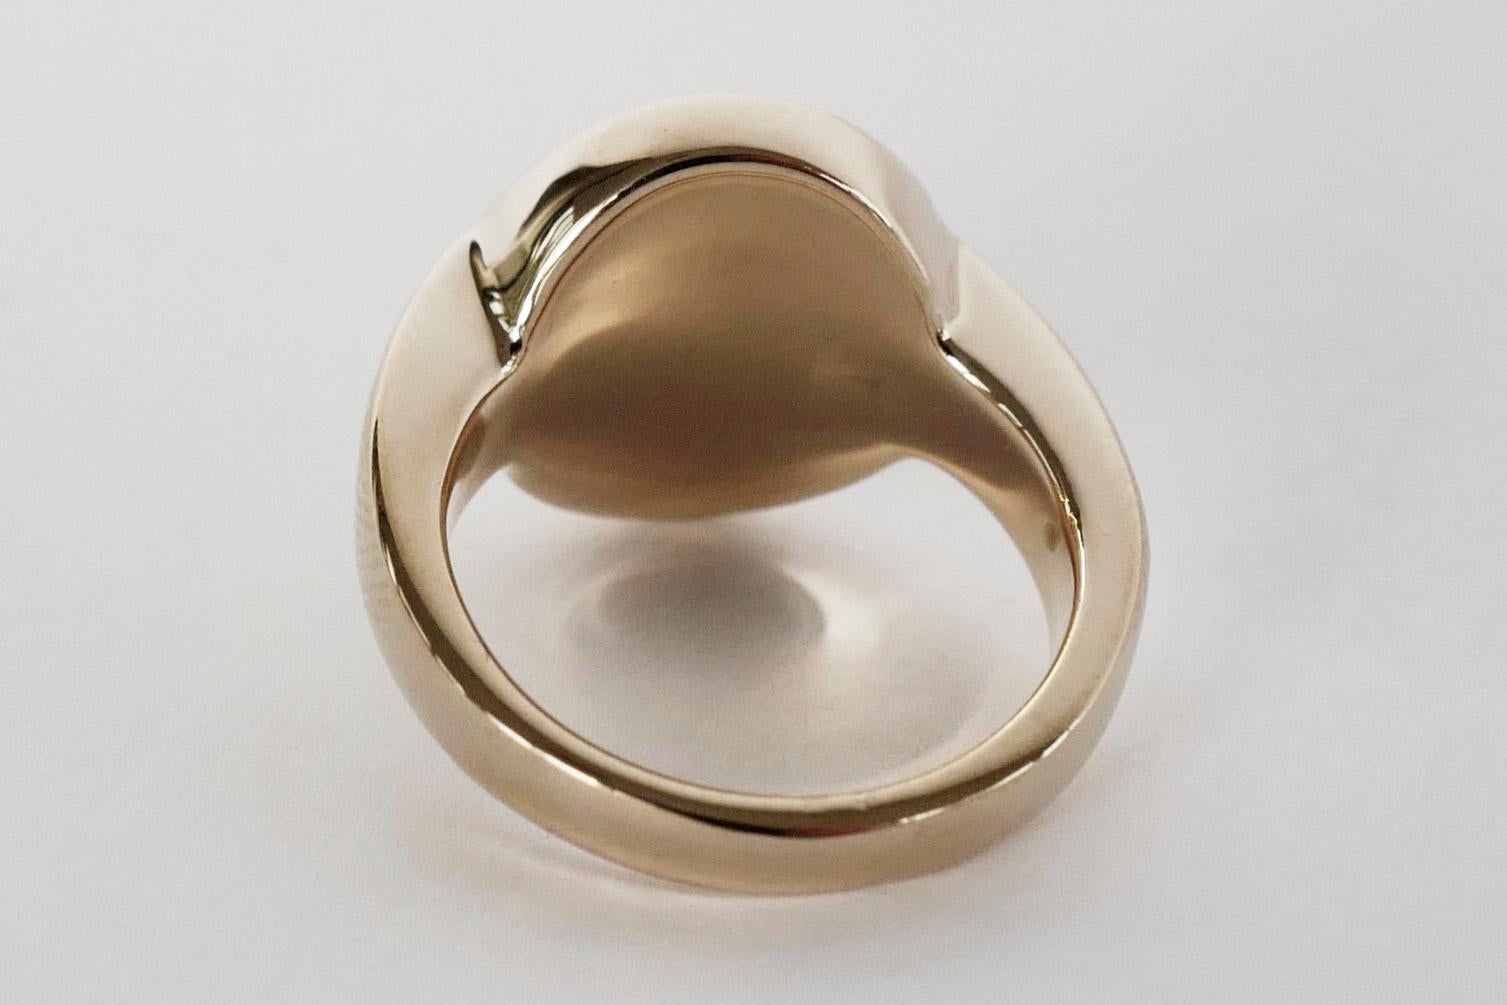 9ct gold skull ring